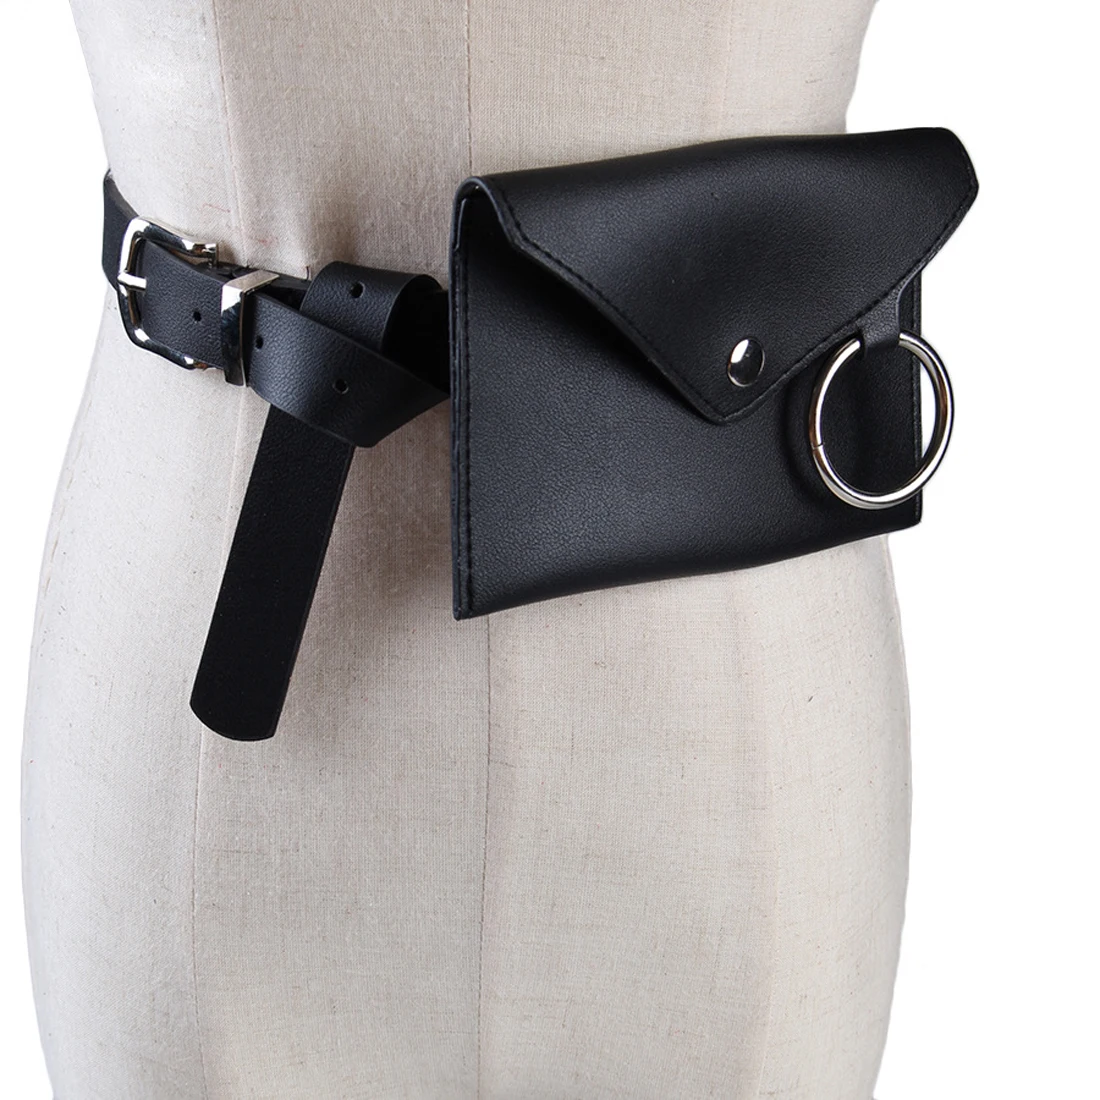 Emarald модная женская Повседневная поясная сумка, поясная сумка для телефона, сумка для ключей, поясная сумка, поясная сумка, мини сумка из искусственной кожи, поясная сумка для телефона - Цвет: Черный